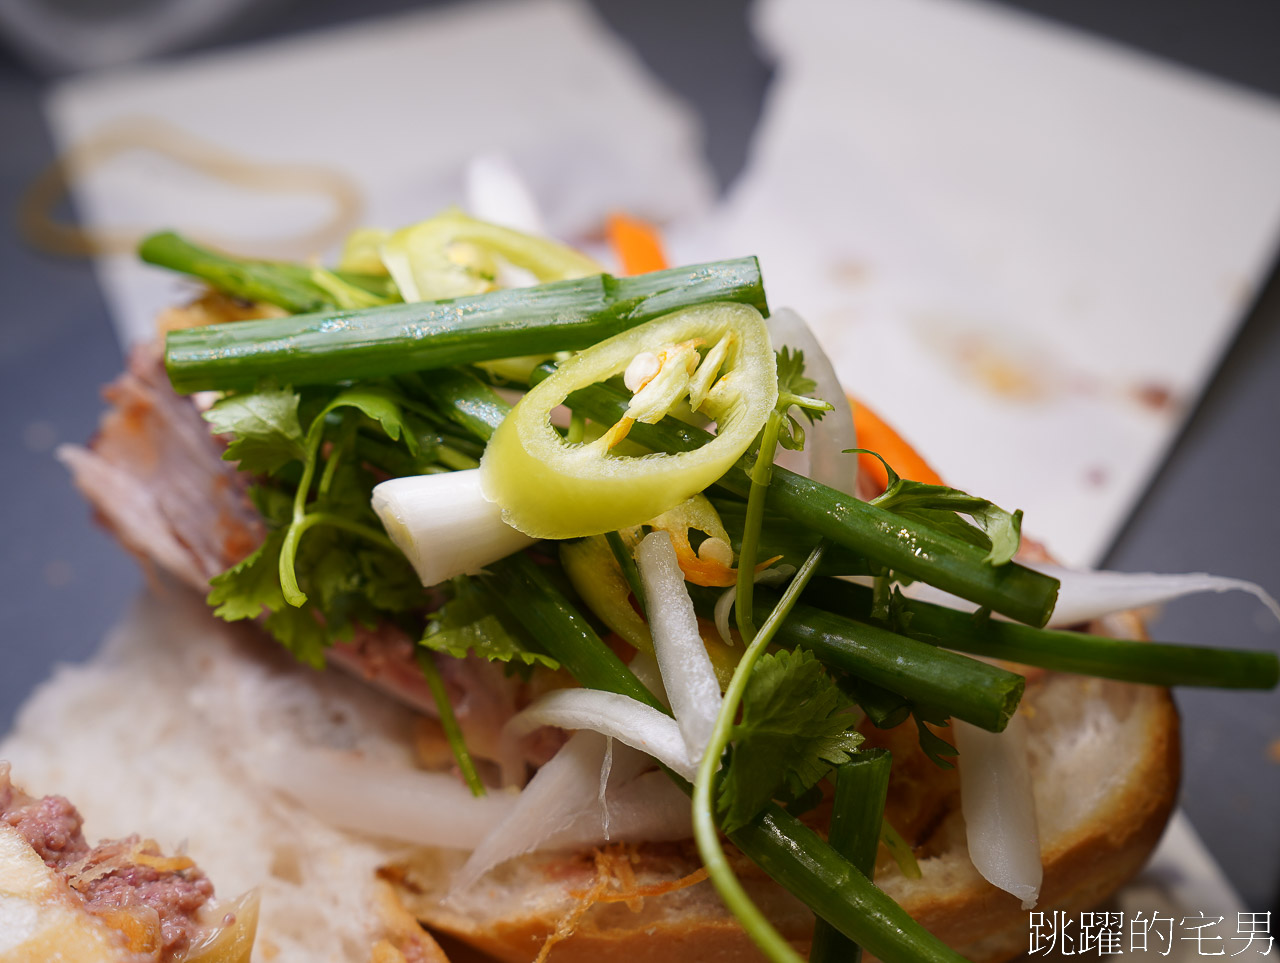 [Bánh Mì Huynh Hoa]絕對是越南美食推薦-在地人都買爆越南法國麵包，30年胡志明美食推薦